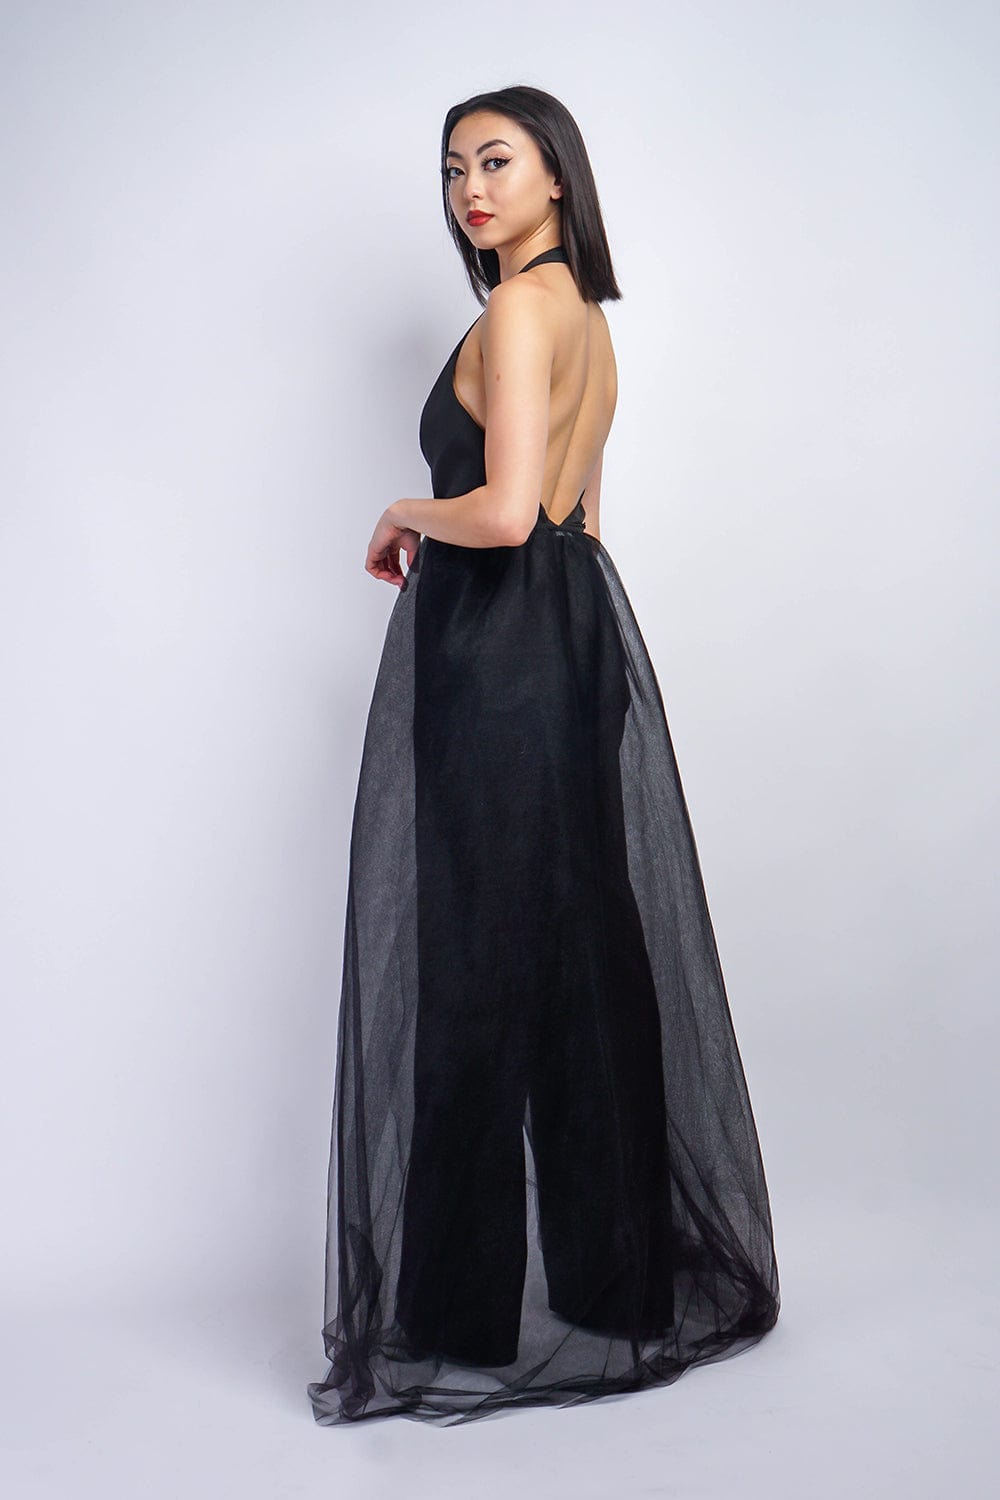 Jumpsuit Black Halter V W/Removable Tulle Skirt Jumpsuit - Chloe Dao